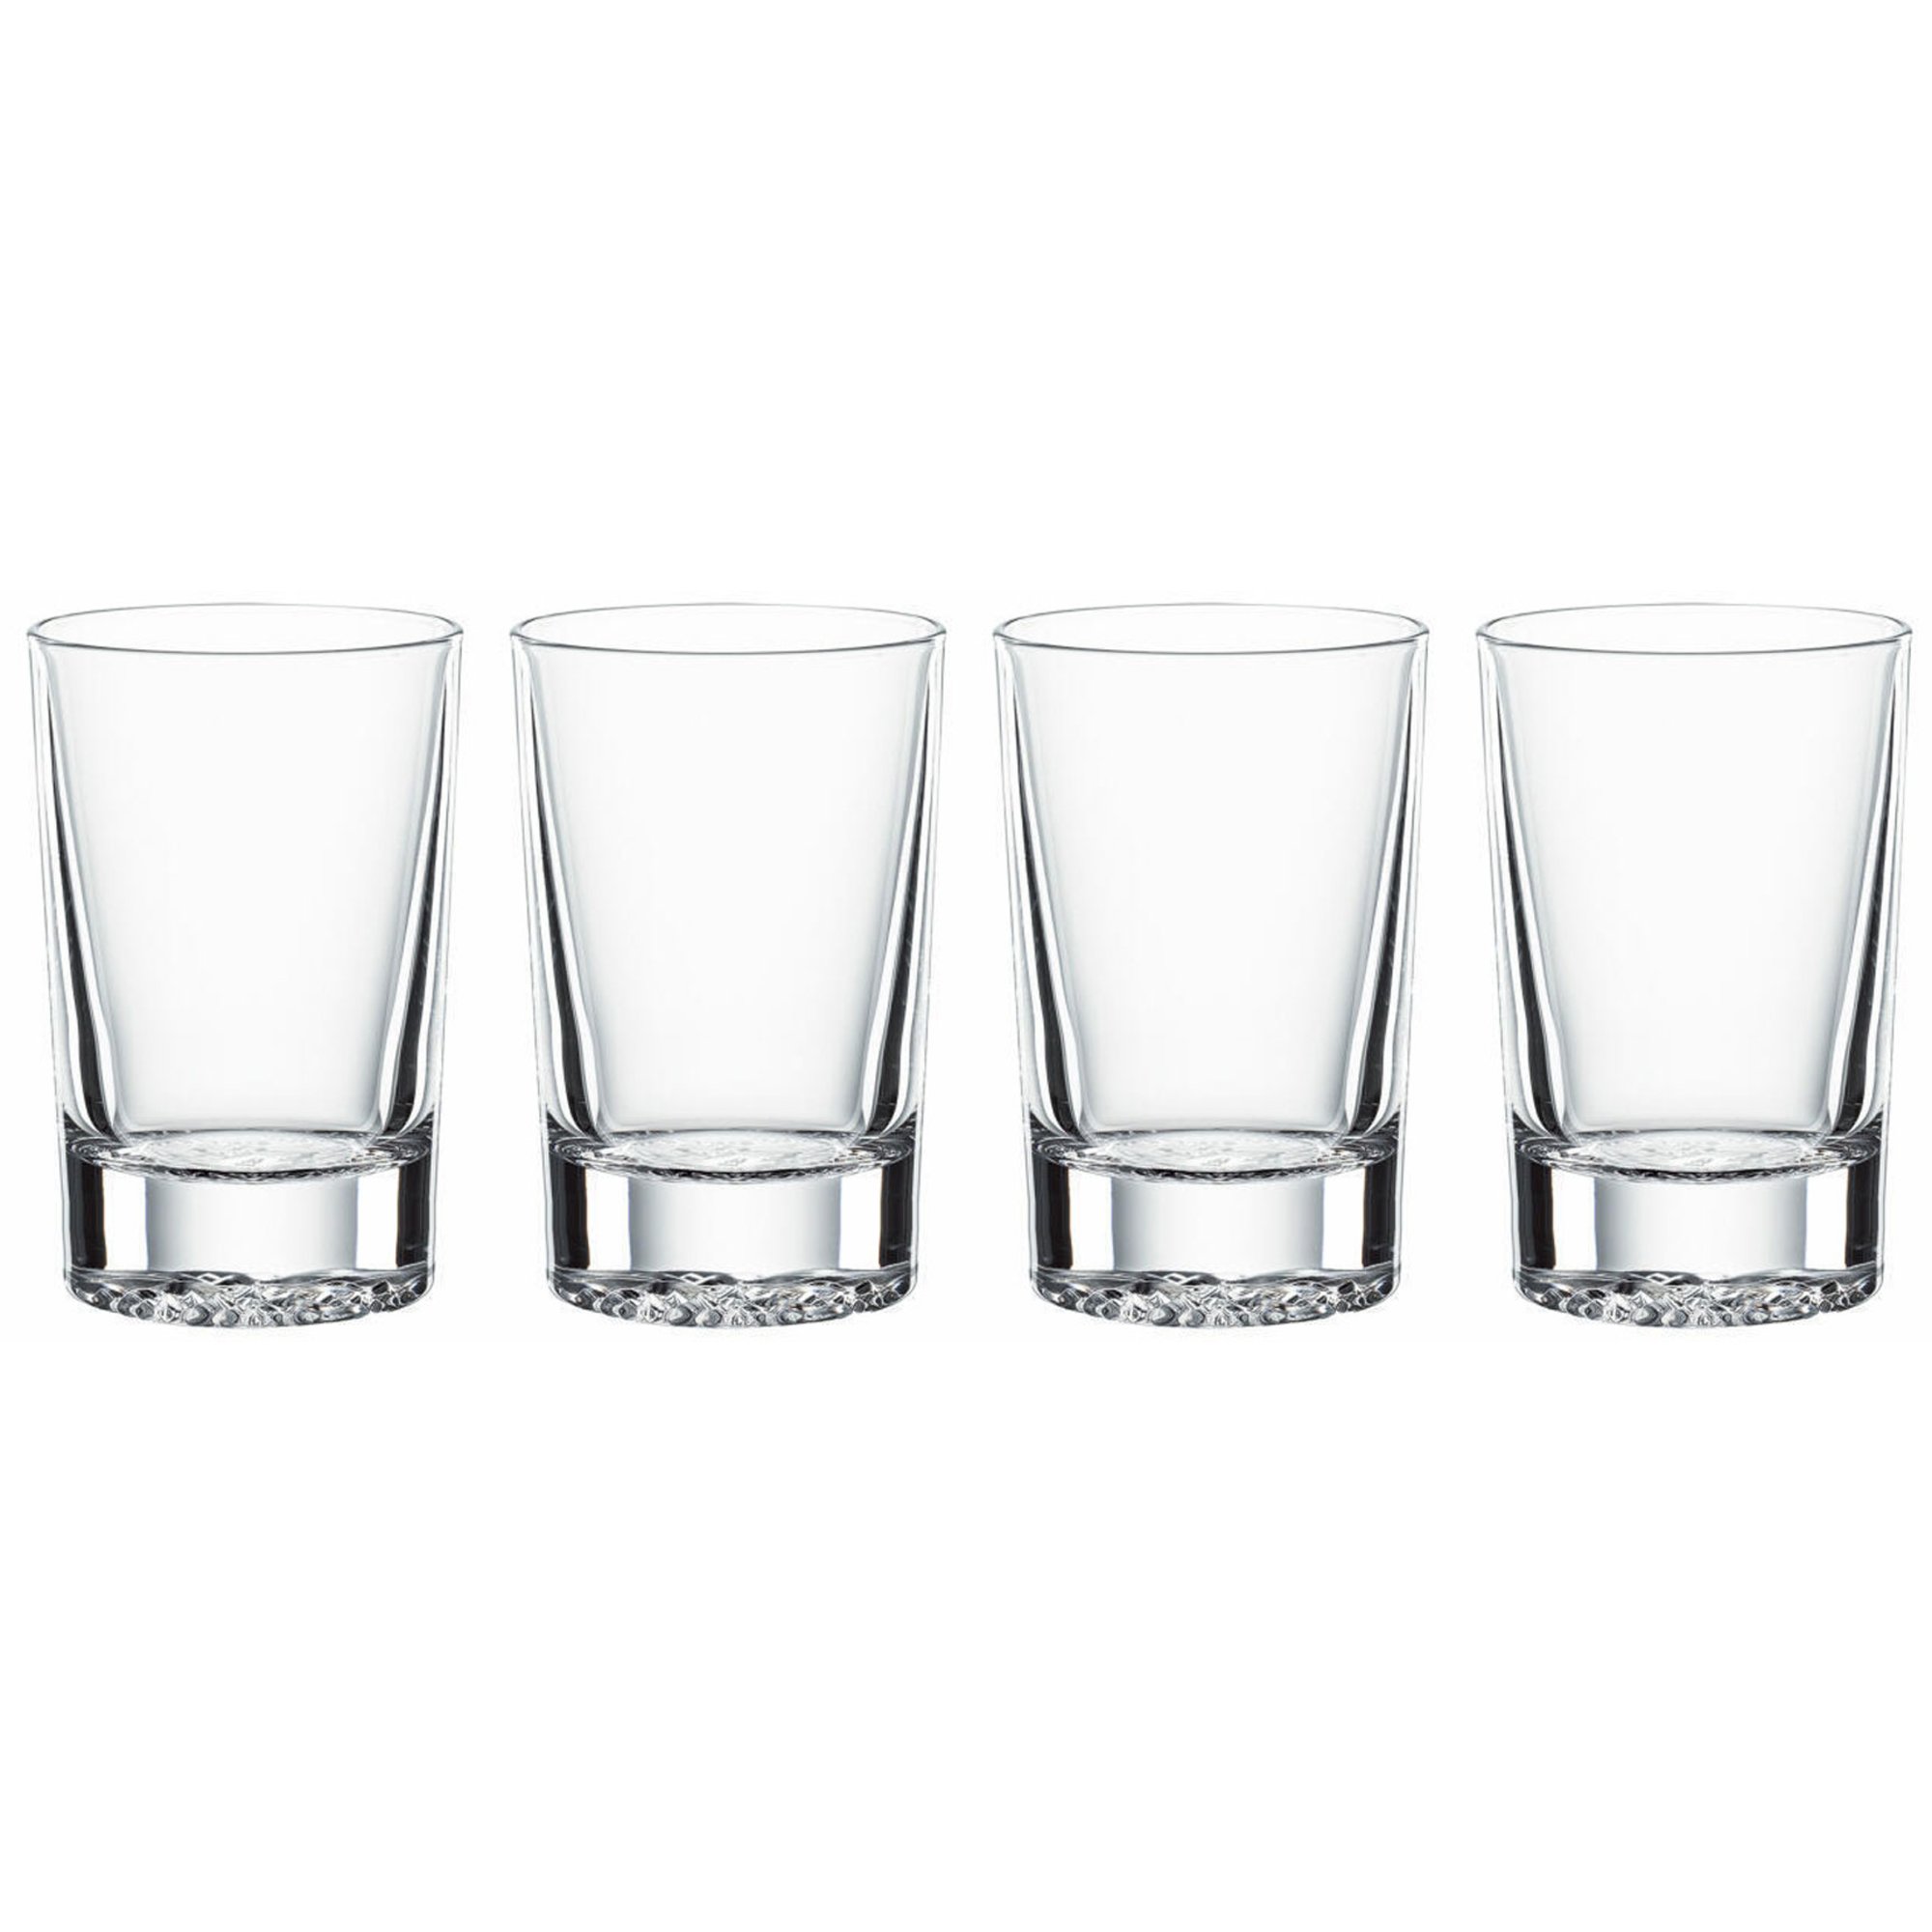 Billede af Spiegelau Lounge 2.0 shotglas 5,5 cl, 4-pack